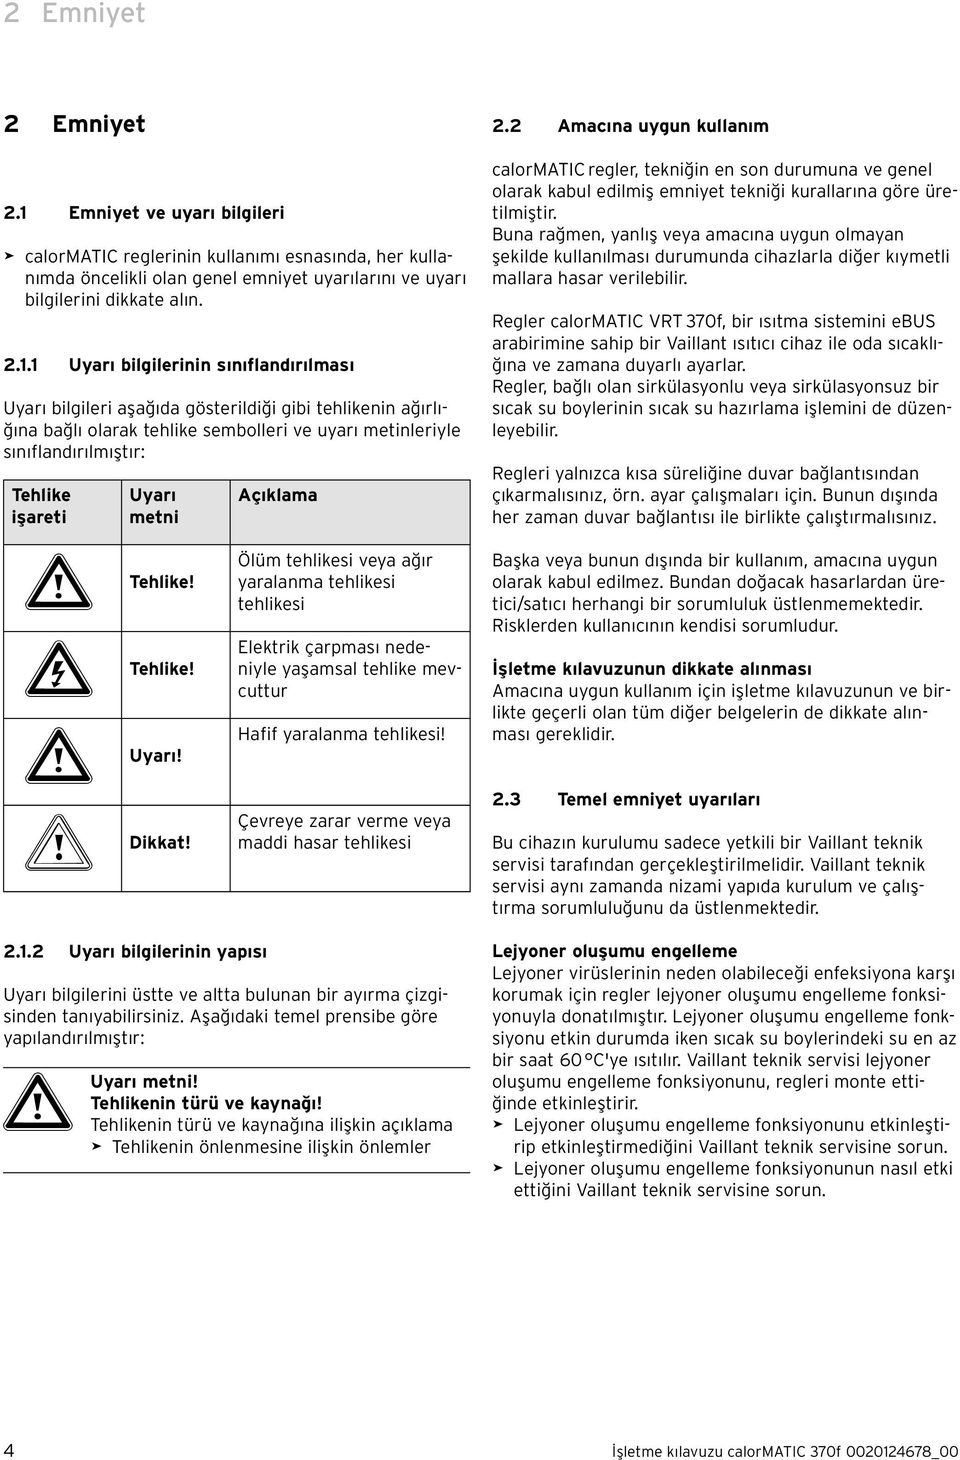 1 Uyarı bilgilerinin sınıflandırılması Uyarı bilgileri aşağıda gösterildiği gibi tehlikenin ağırlığına bağlı olarak tehlike sembolleri ve uyarı metinleriyle sınıflandırılmıştır: Tehlike işareti Uyarı